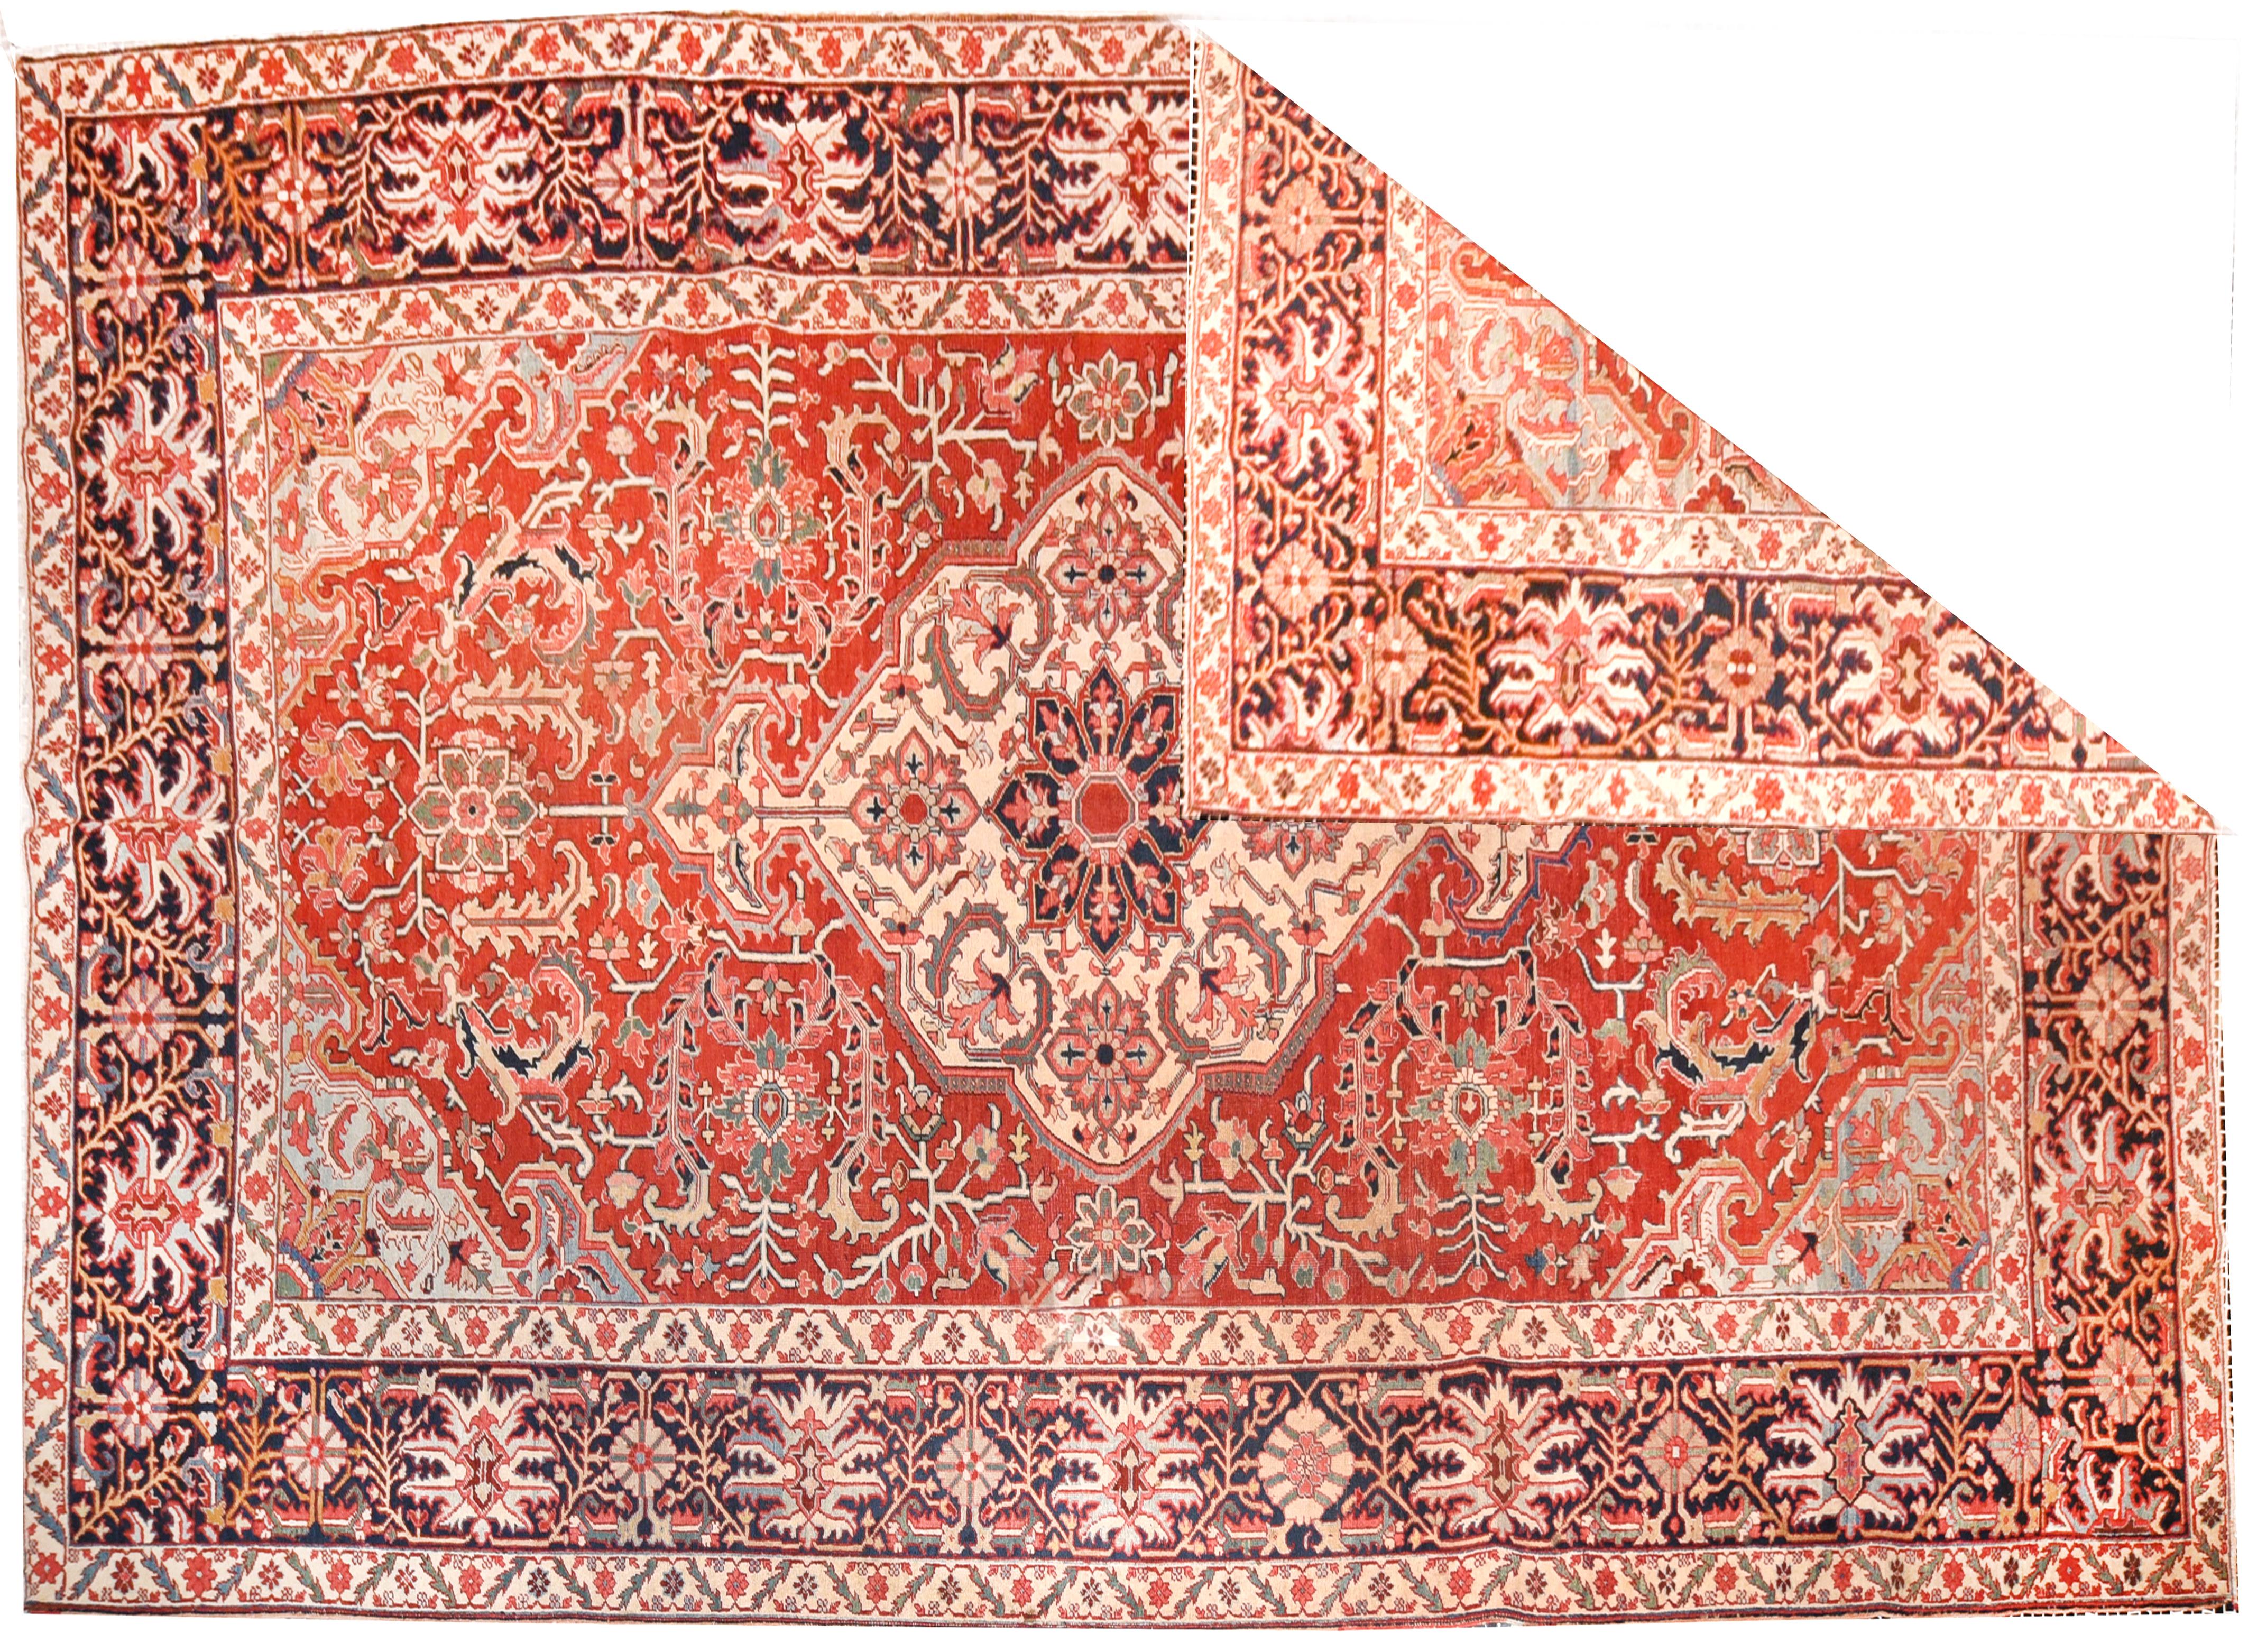 Les tapis Heriz sont l'un des tapis les plus célèbres d'Iran, en raison de leur style unique et distinctif. Heriz est une ville située dans le nord-ouest de l'Iran, près de la ville de Tabriz, qui est un important centre de tissage de tapis en Iran.